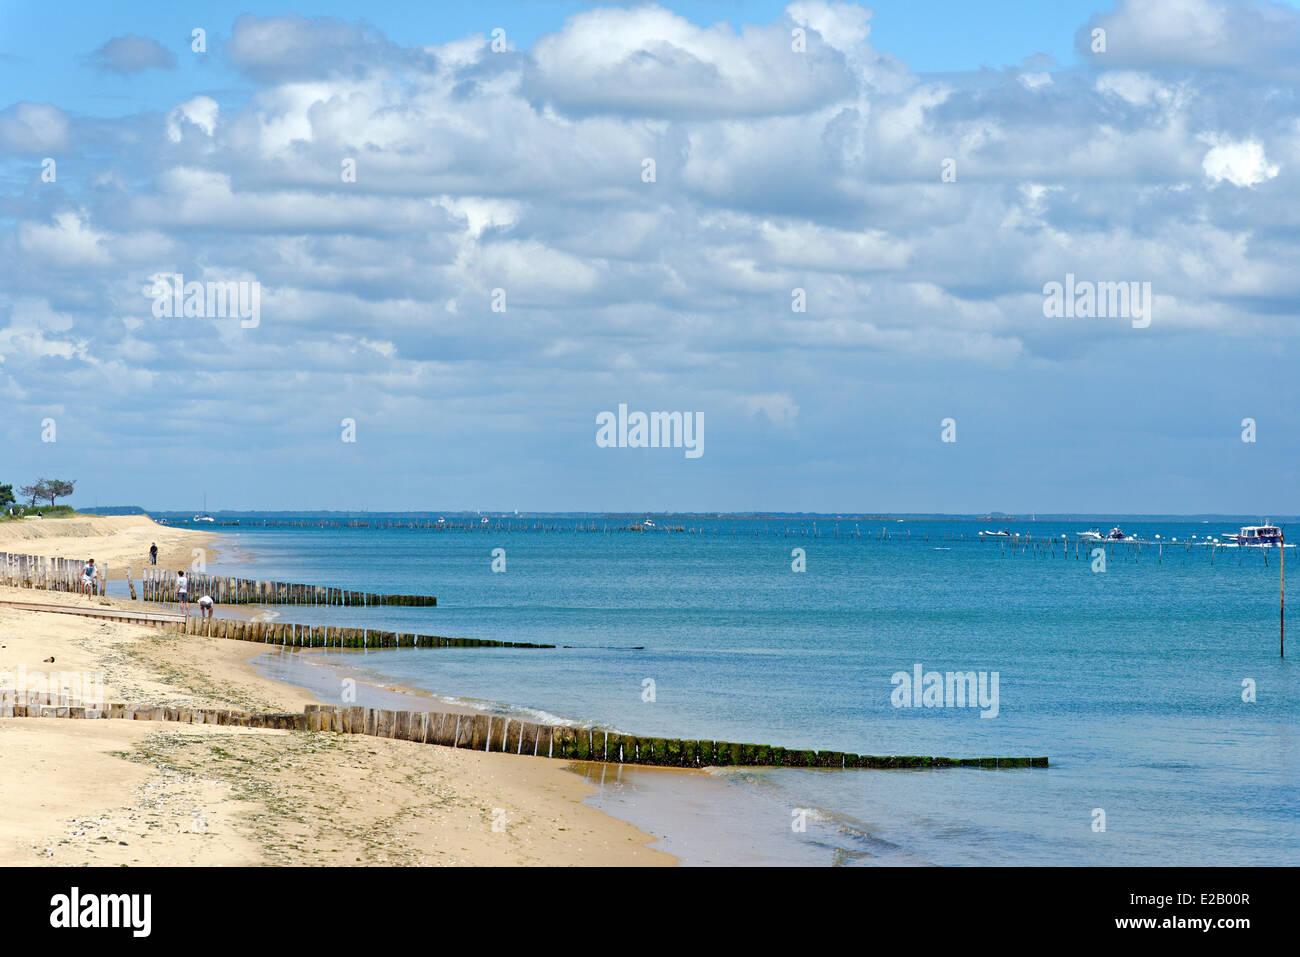 Francia, bahía de Arcachon, Gironde, Cap Ferret, rompeolas de varas de madera Foto de stock